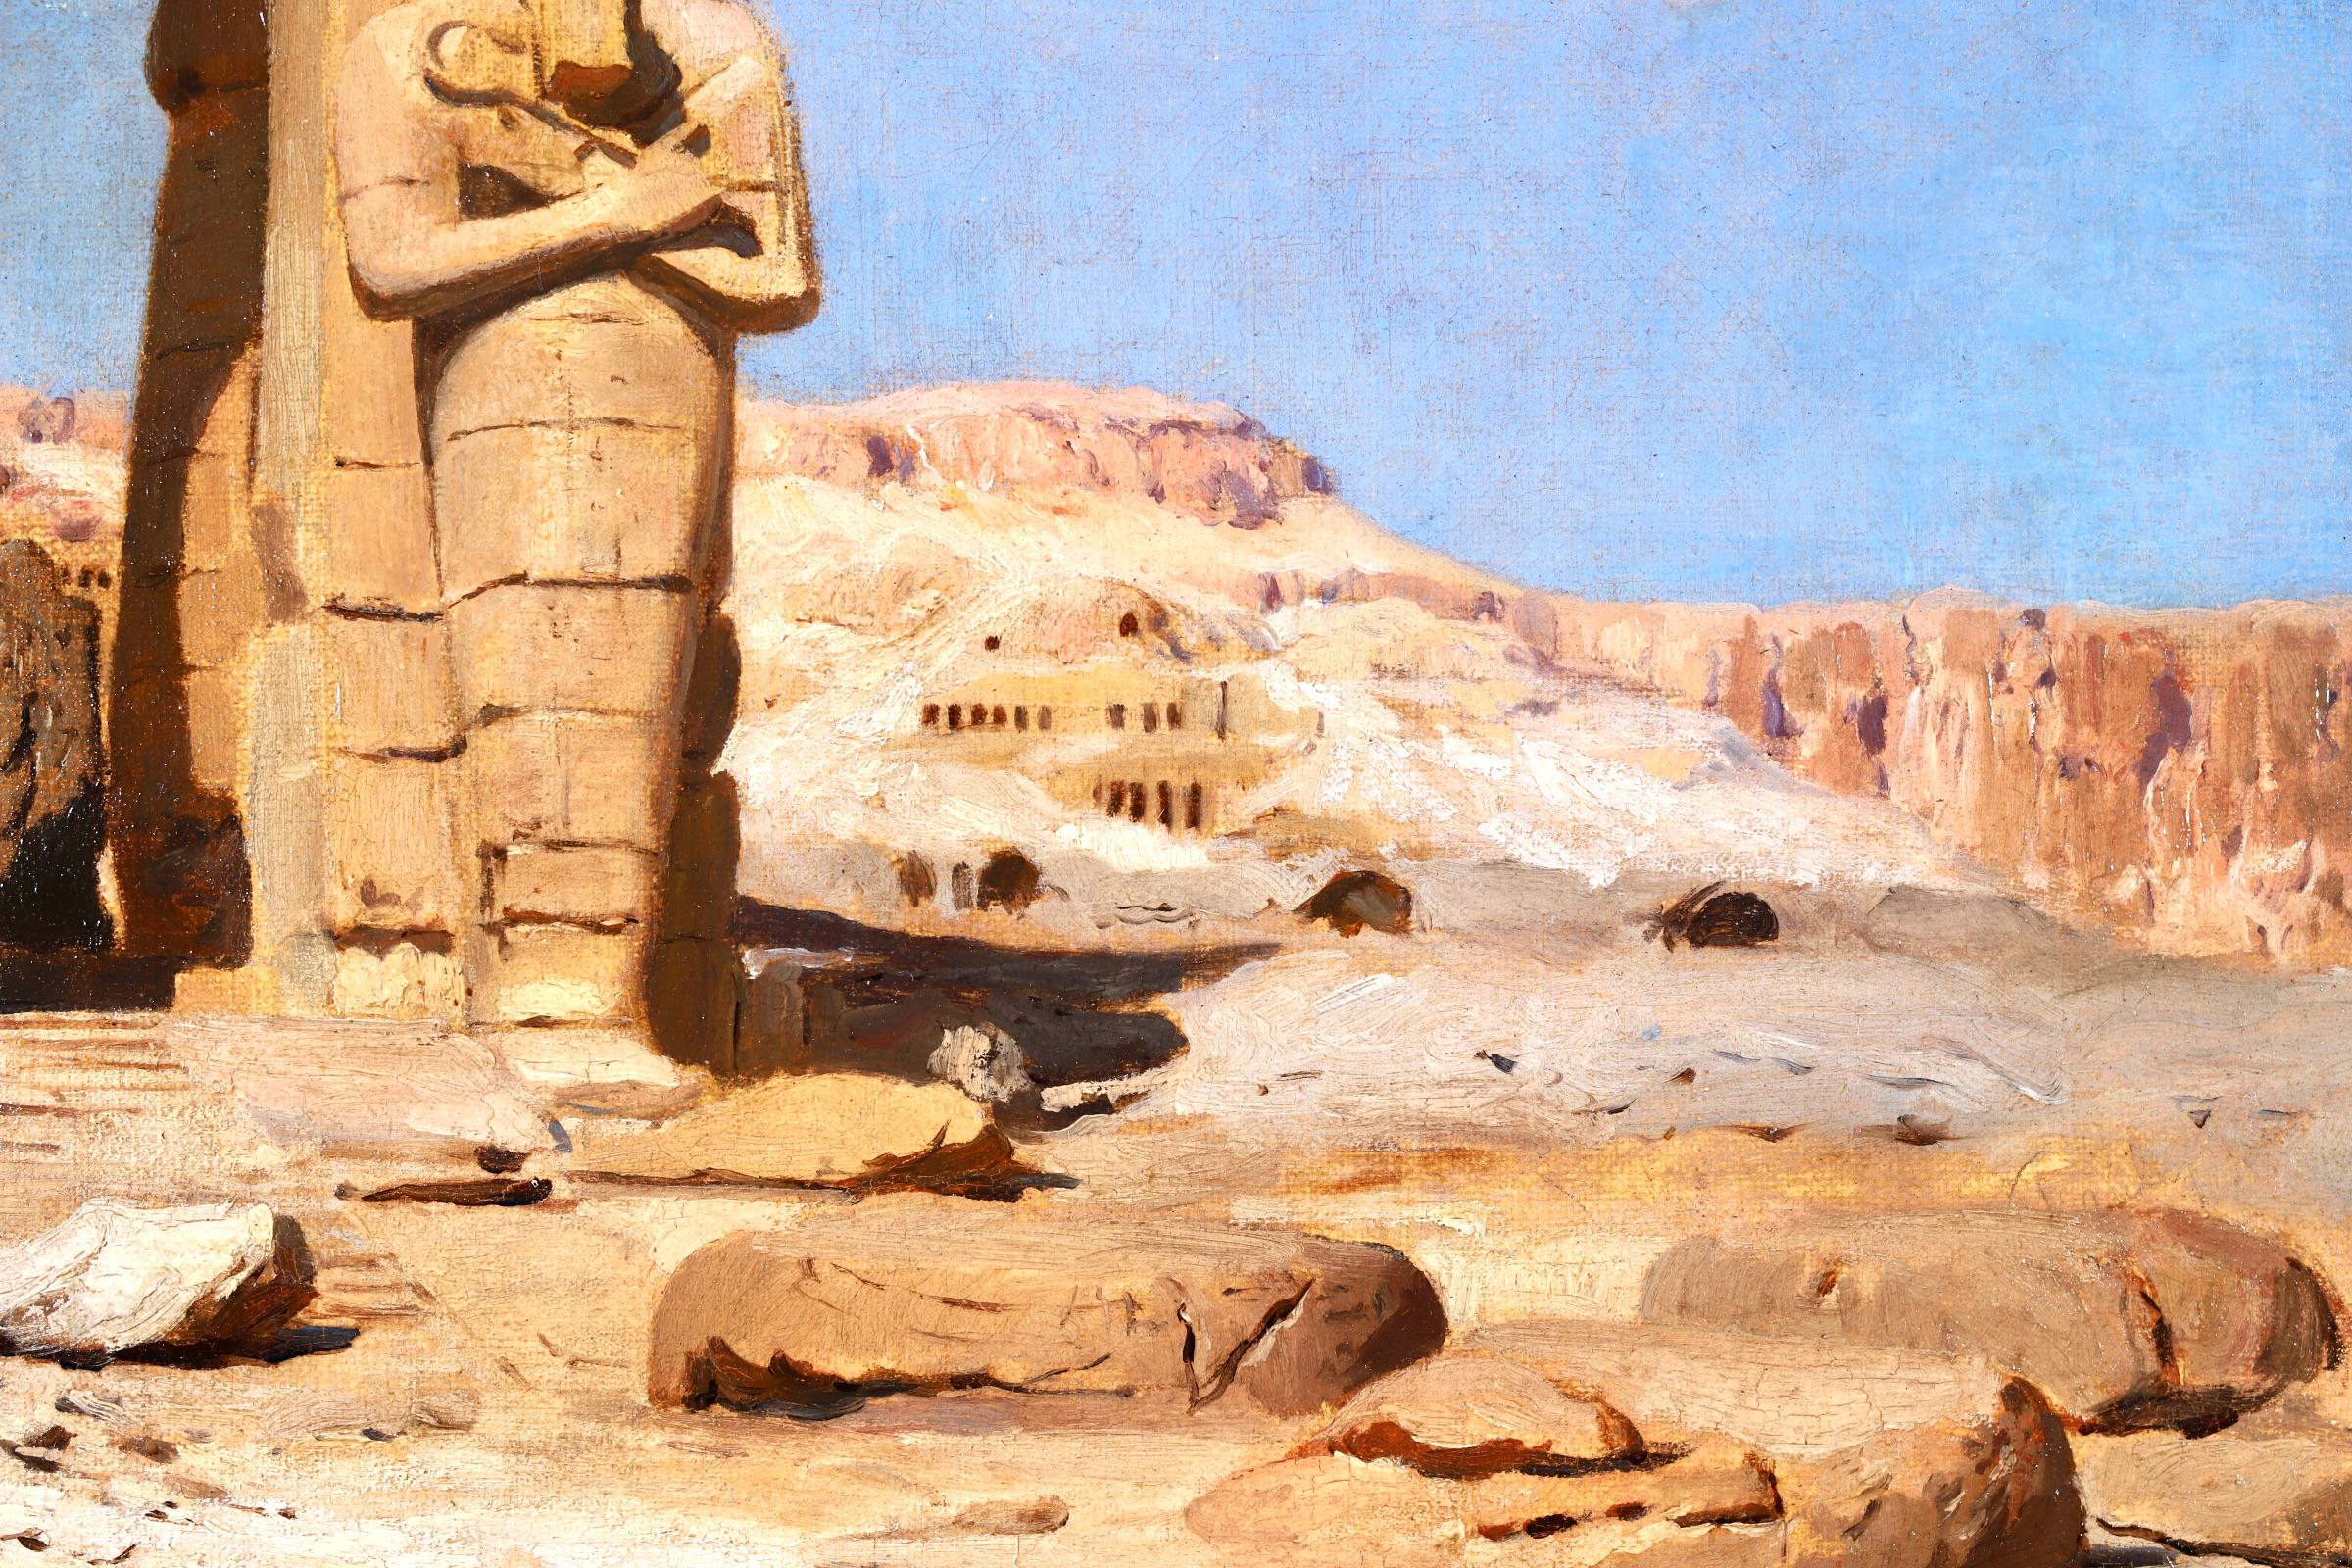 Colossi of Memnon, Egypt - Orientalist Landscape Oil - Frederick Arthur Bridgman 2